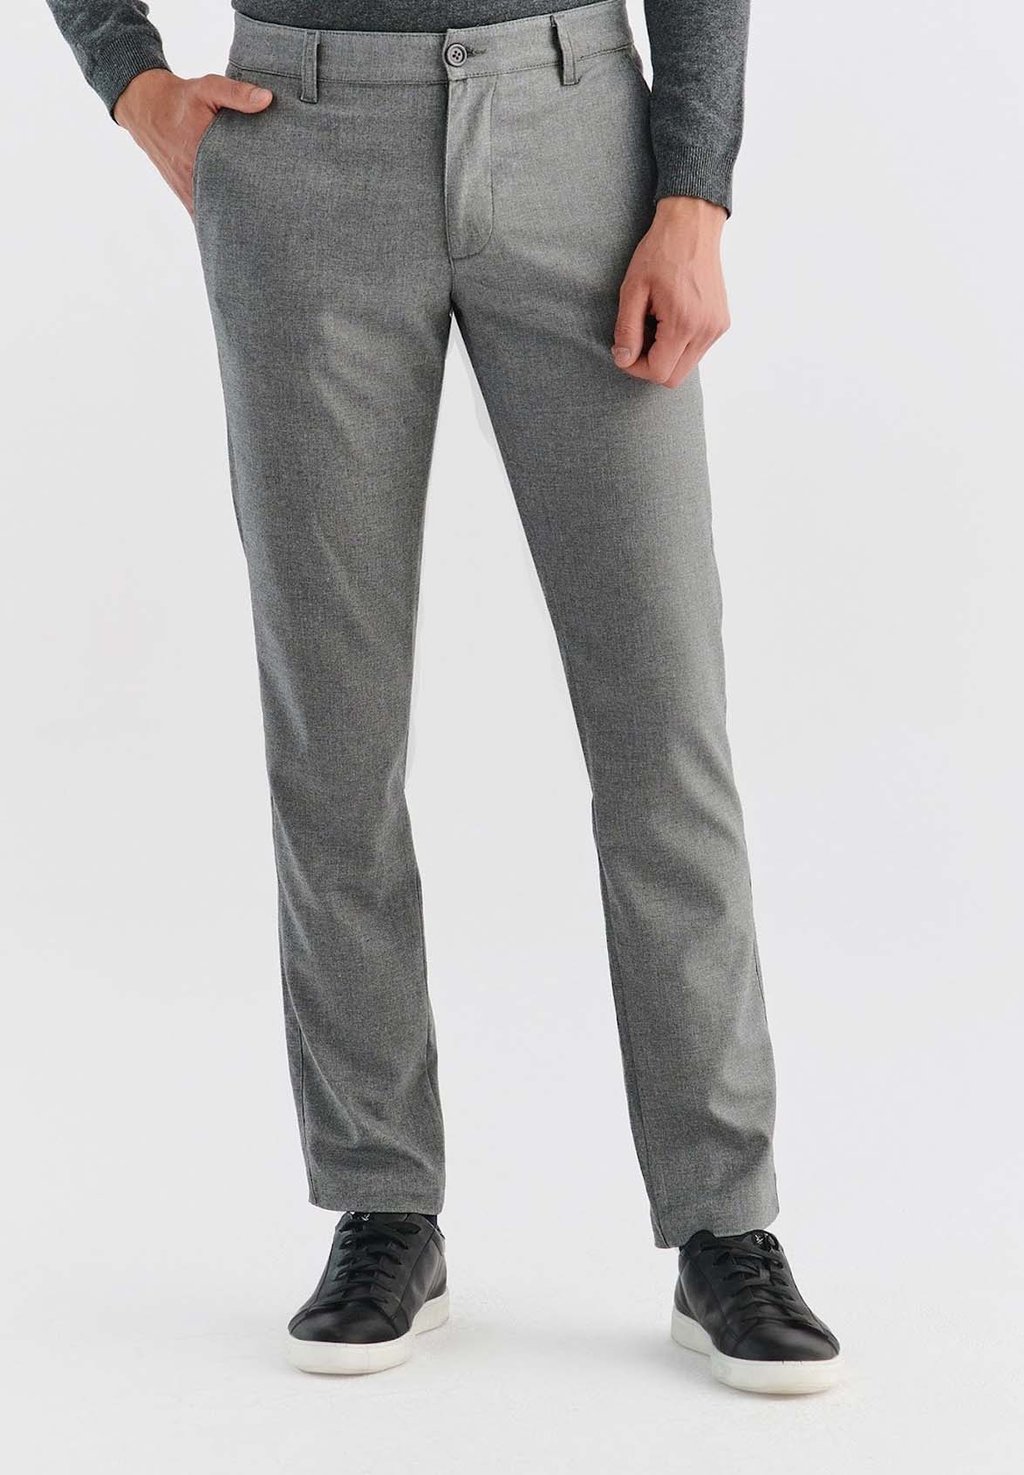 Тканевые брюки Pako Lorente, серый